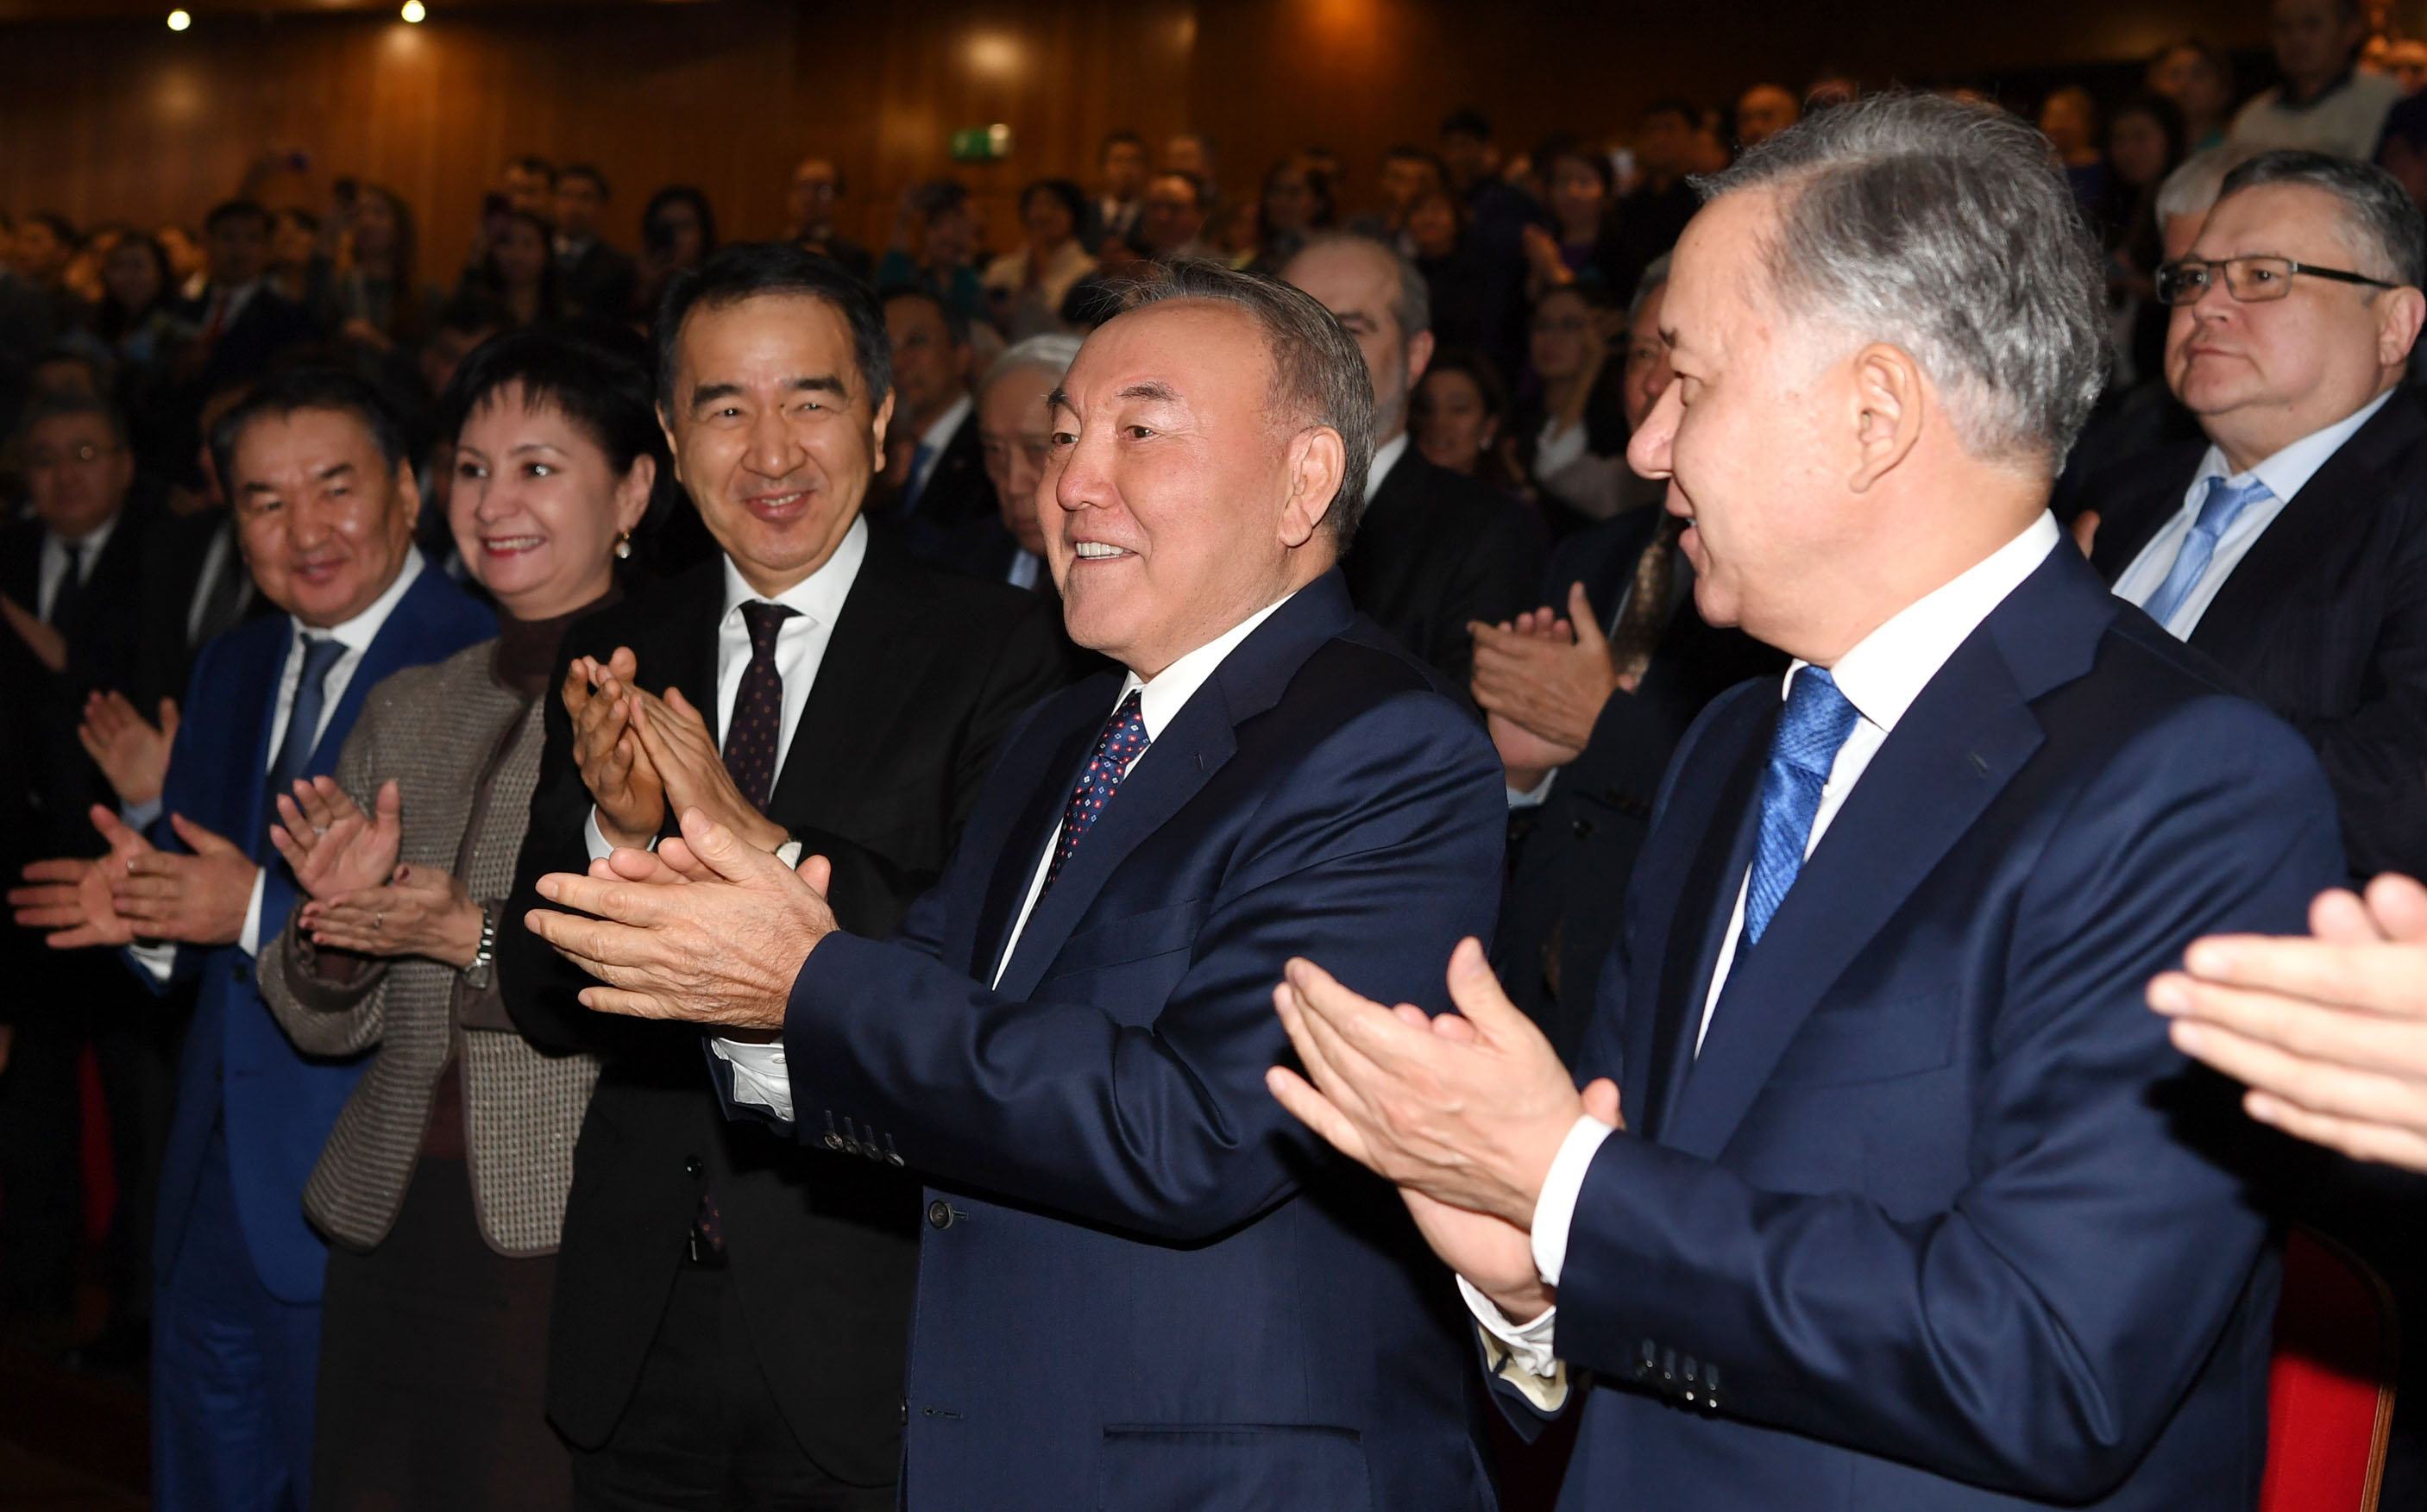 Нурсултан Назарбаев посетил премьеру фильма "Путь лидера. Астана"